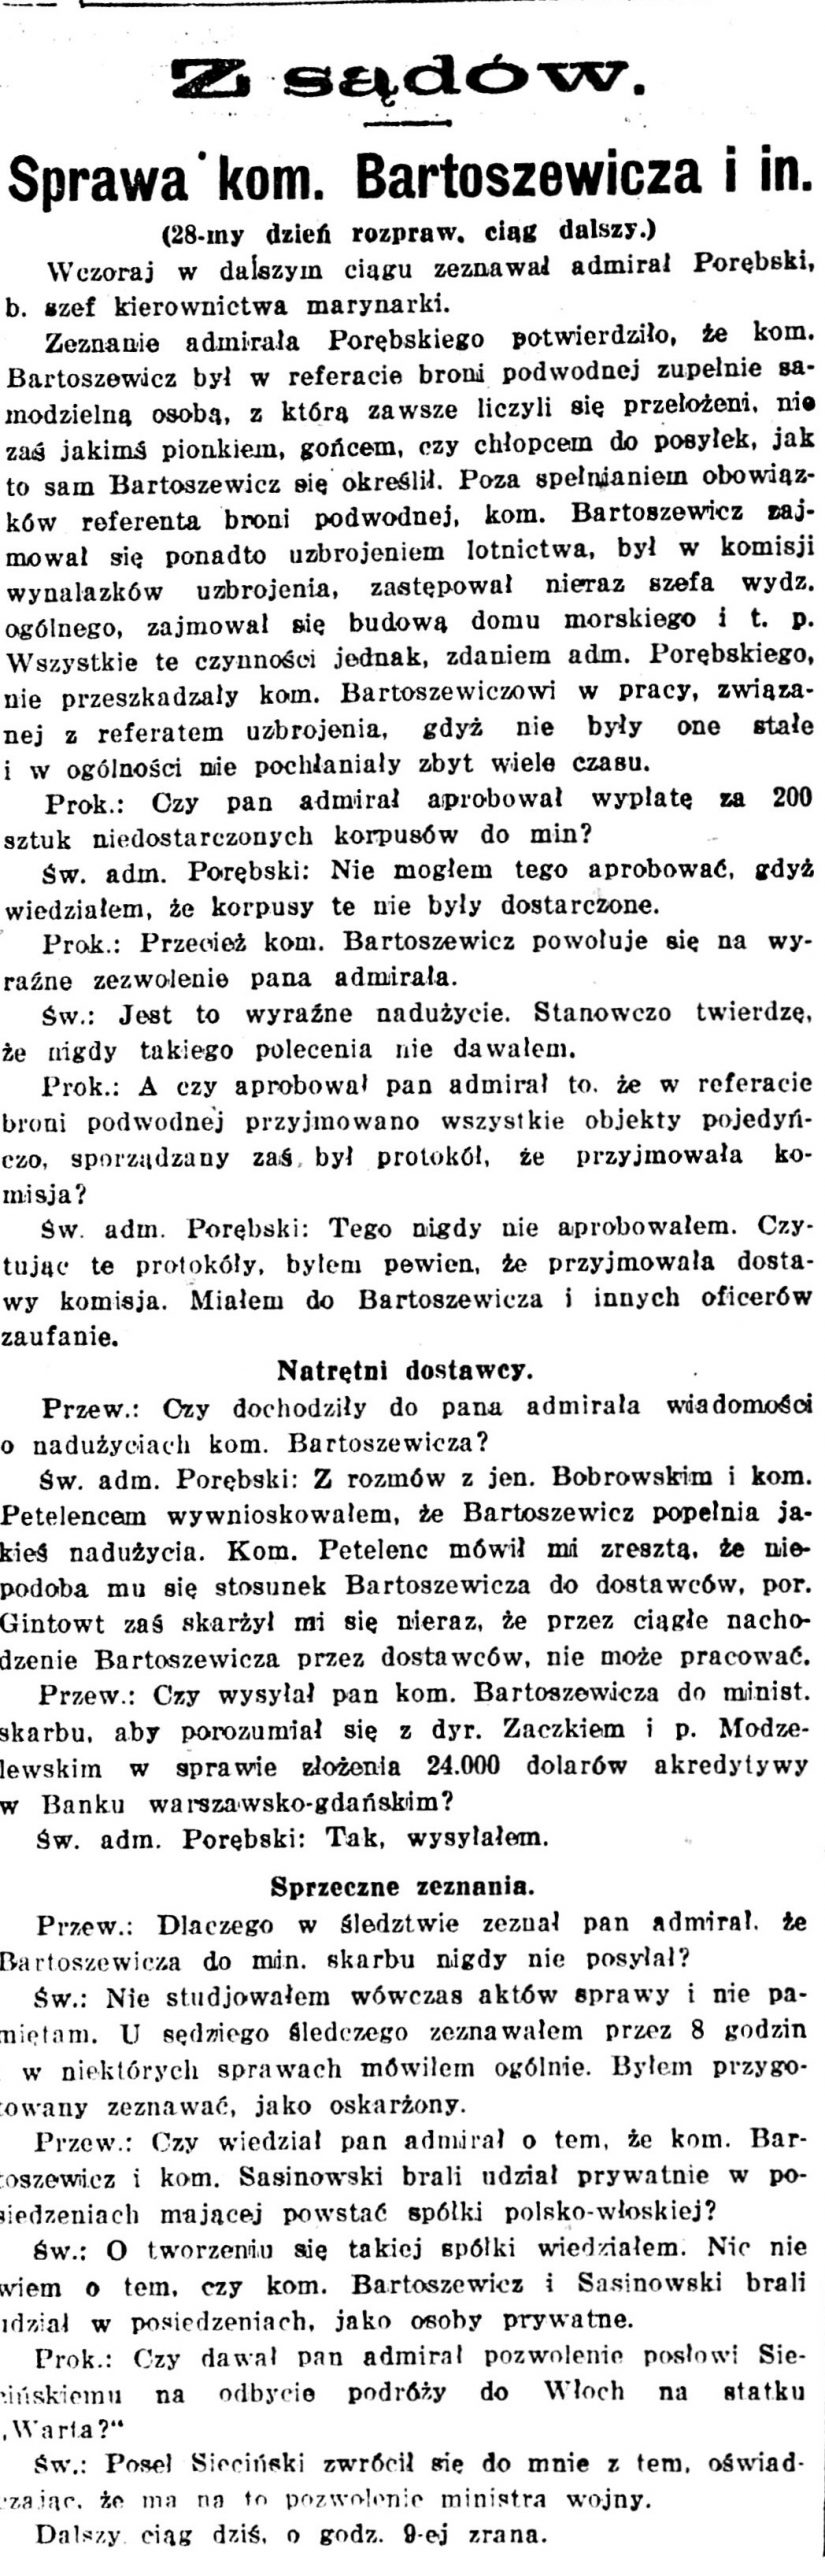 Sprawa kom. Bartoszewicza i in. // Kurjer Warszawski. - 1926, nr 315, s. [brak danych]